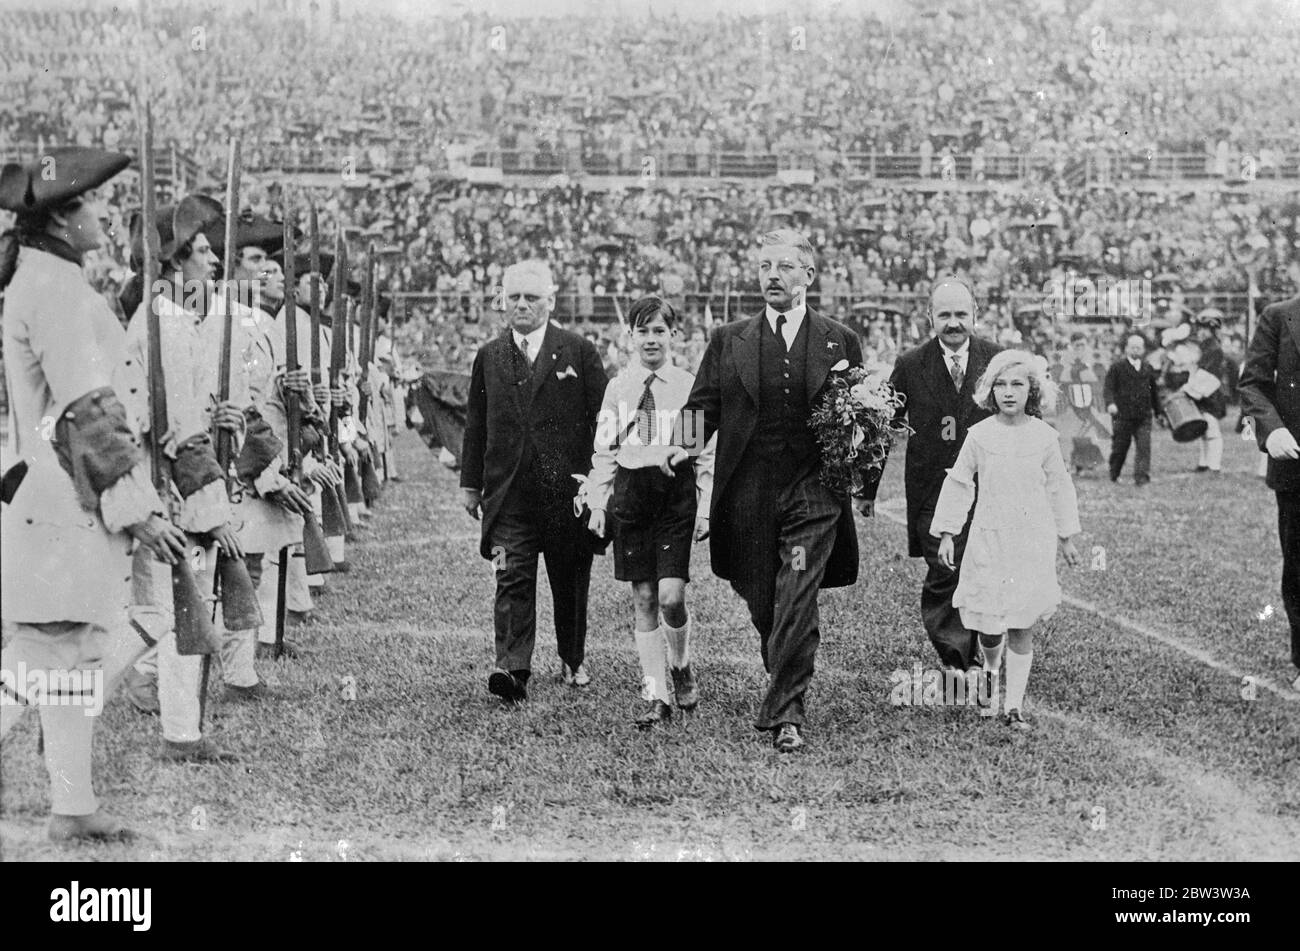 In den Fußstapfen des Kanzlers Vater . Bundeskanzler Schuschnigg von Österreich führte seine Kinder zur Tribüne, als im Wiener Stadion eine große Jugenddemonstration stattfand. Mai 1936 Stockfoto